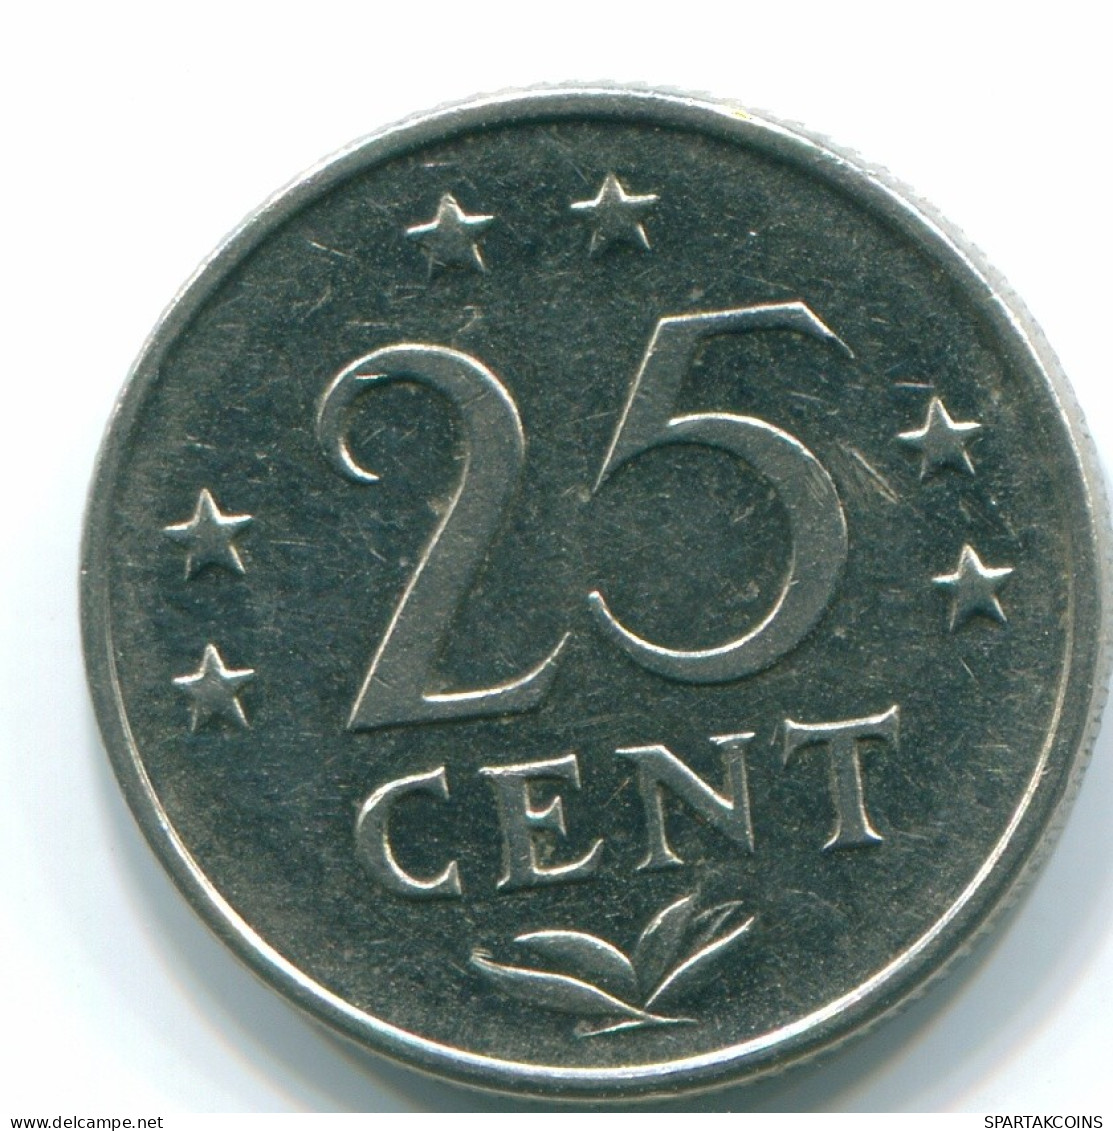 25 CENTS 1971 NETHERLANDS ANTILLES Nickel Colonial Coin #S11511.U.A - Niederländische Antillen